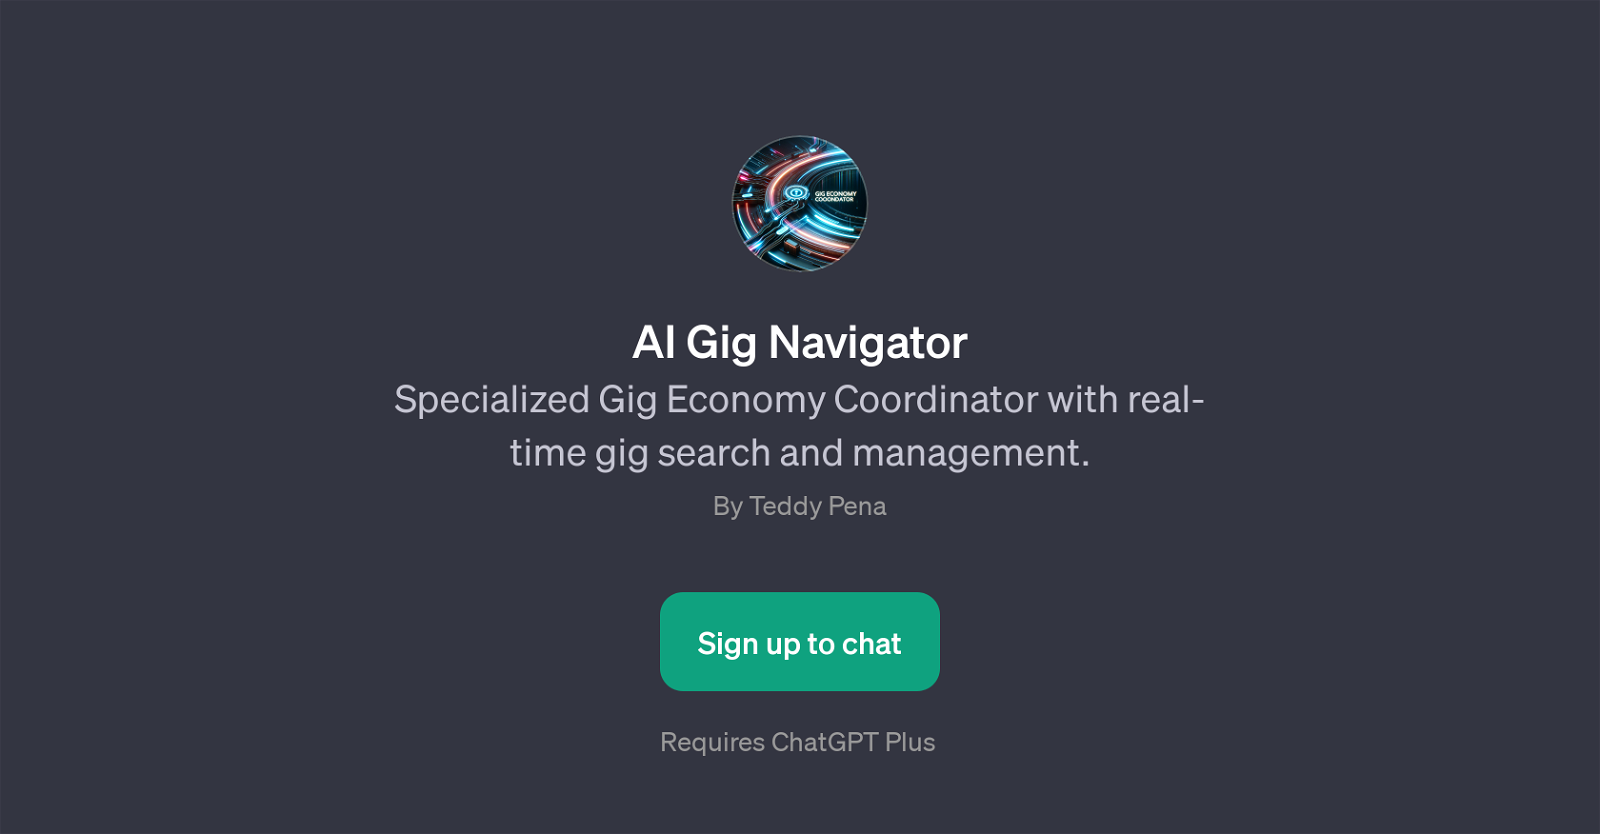 AI Gig Navigator website